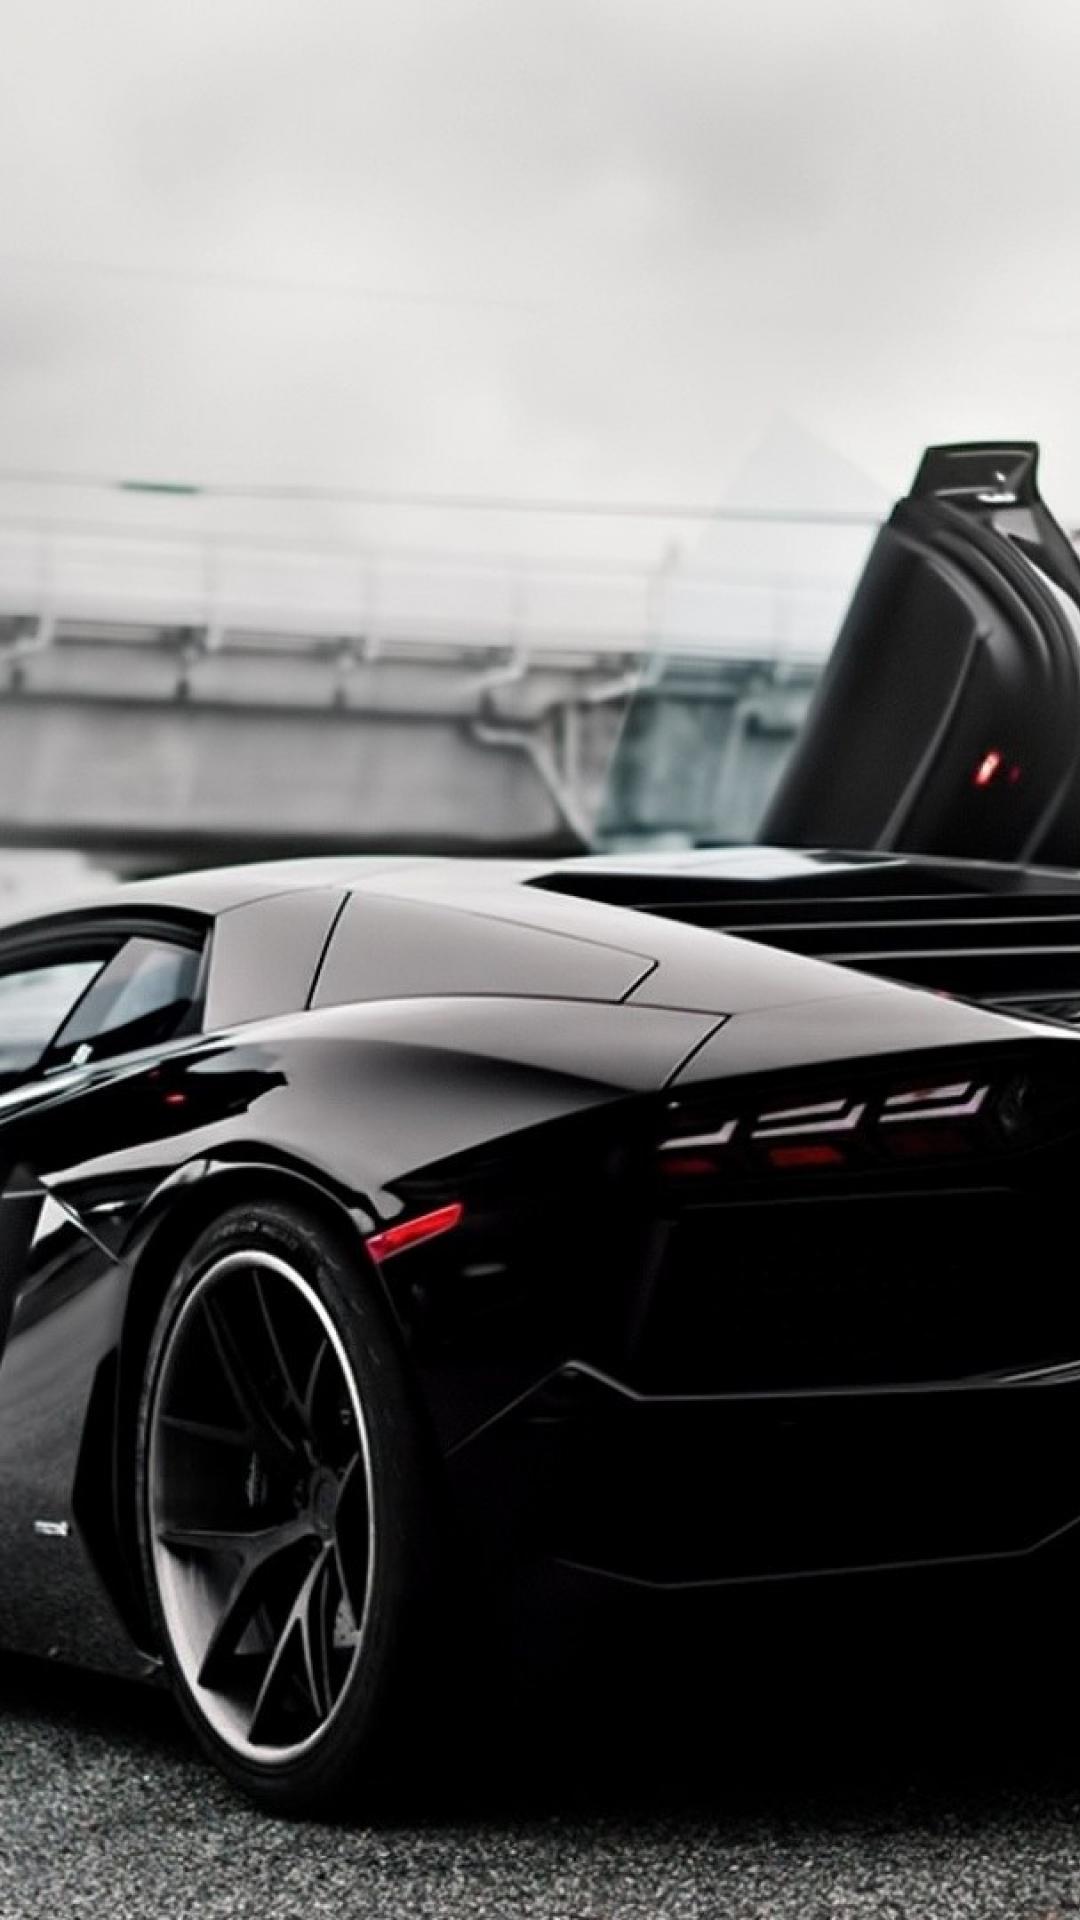 Car Lamborghini Aventador Black HD Car Wallpaper 1080p